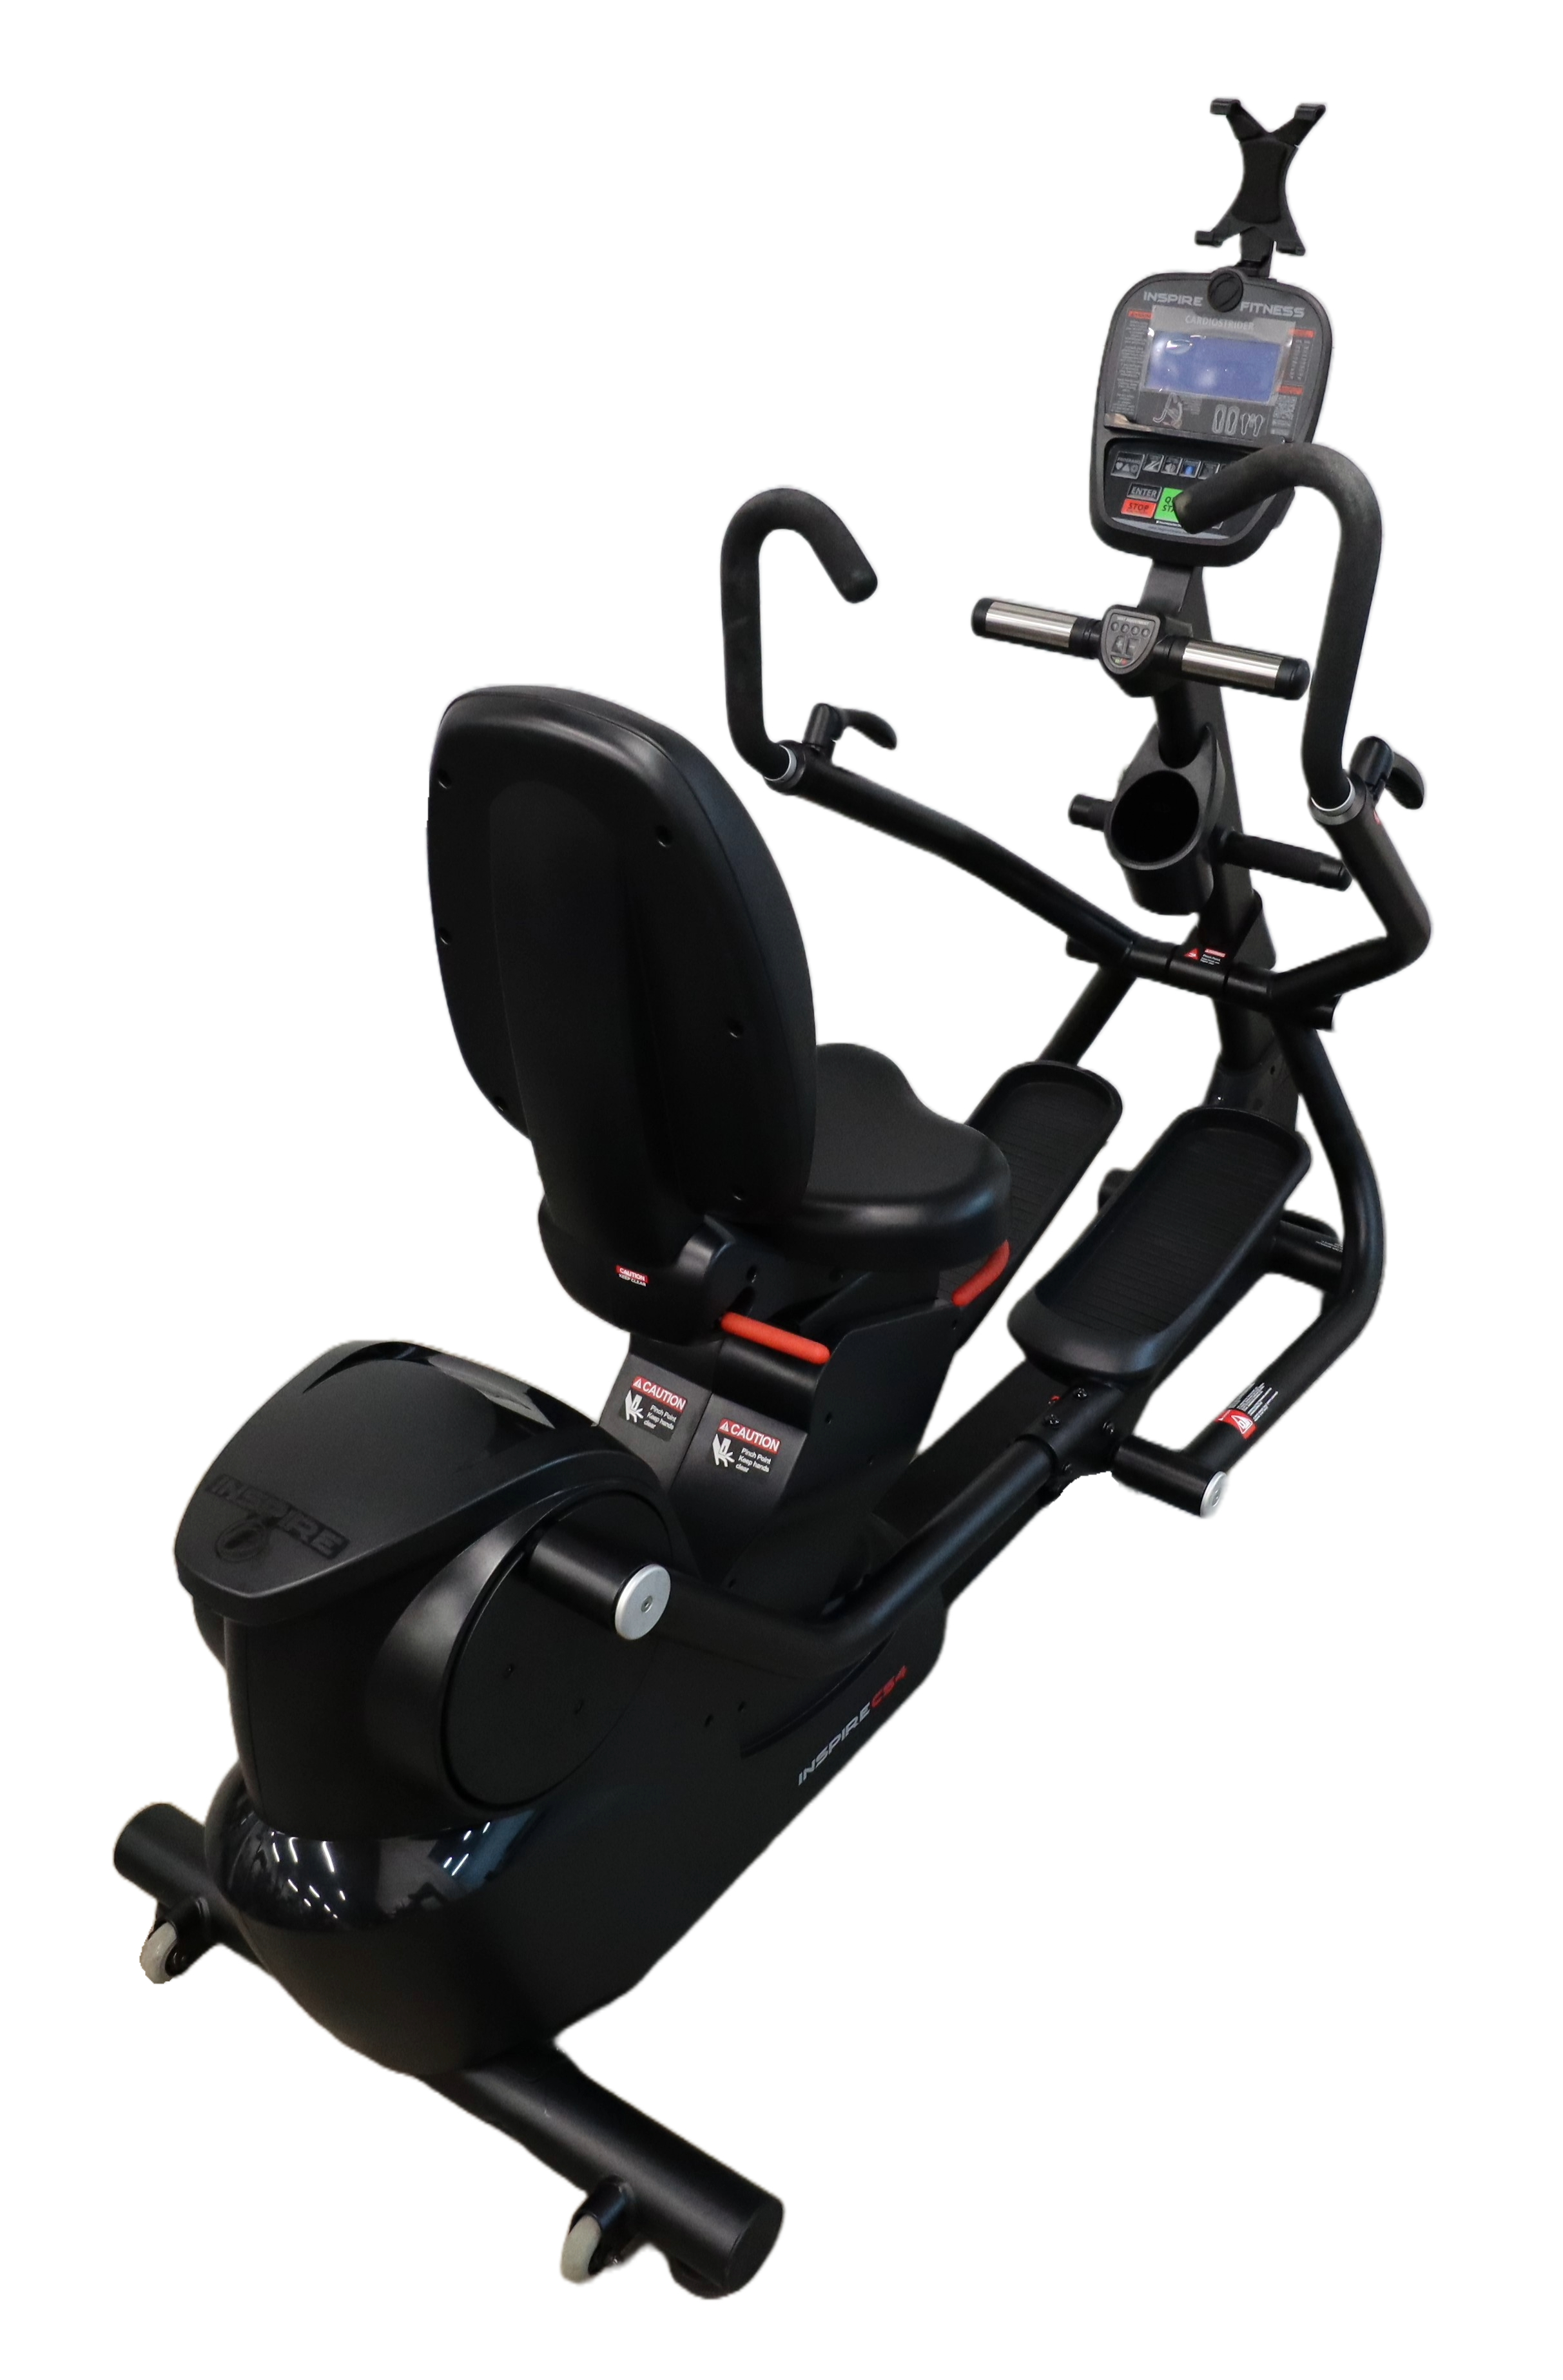 Used Inspire Fitness Cardio Strider CS4 6-19-12-000 Recumbent Elliptical